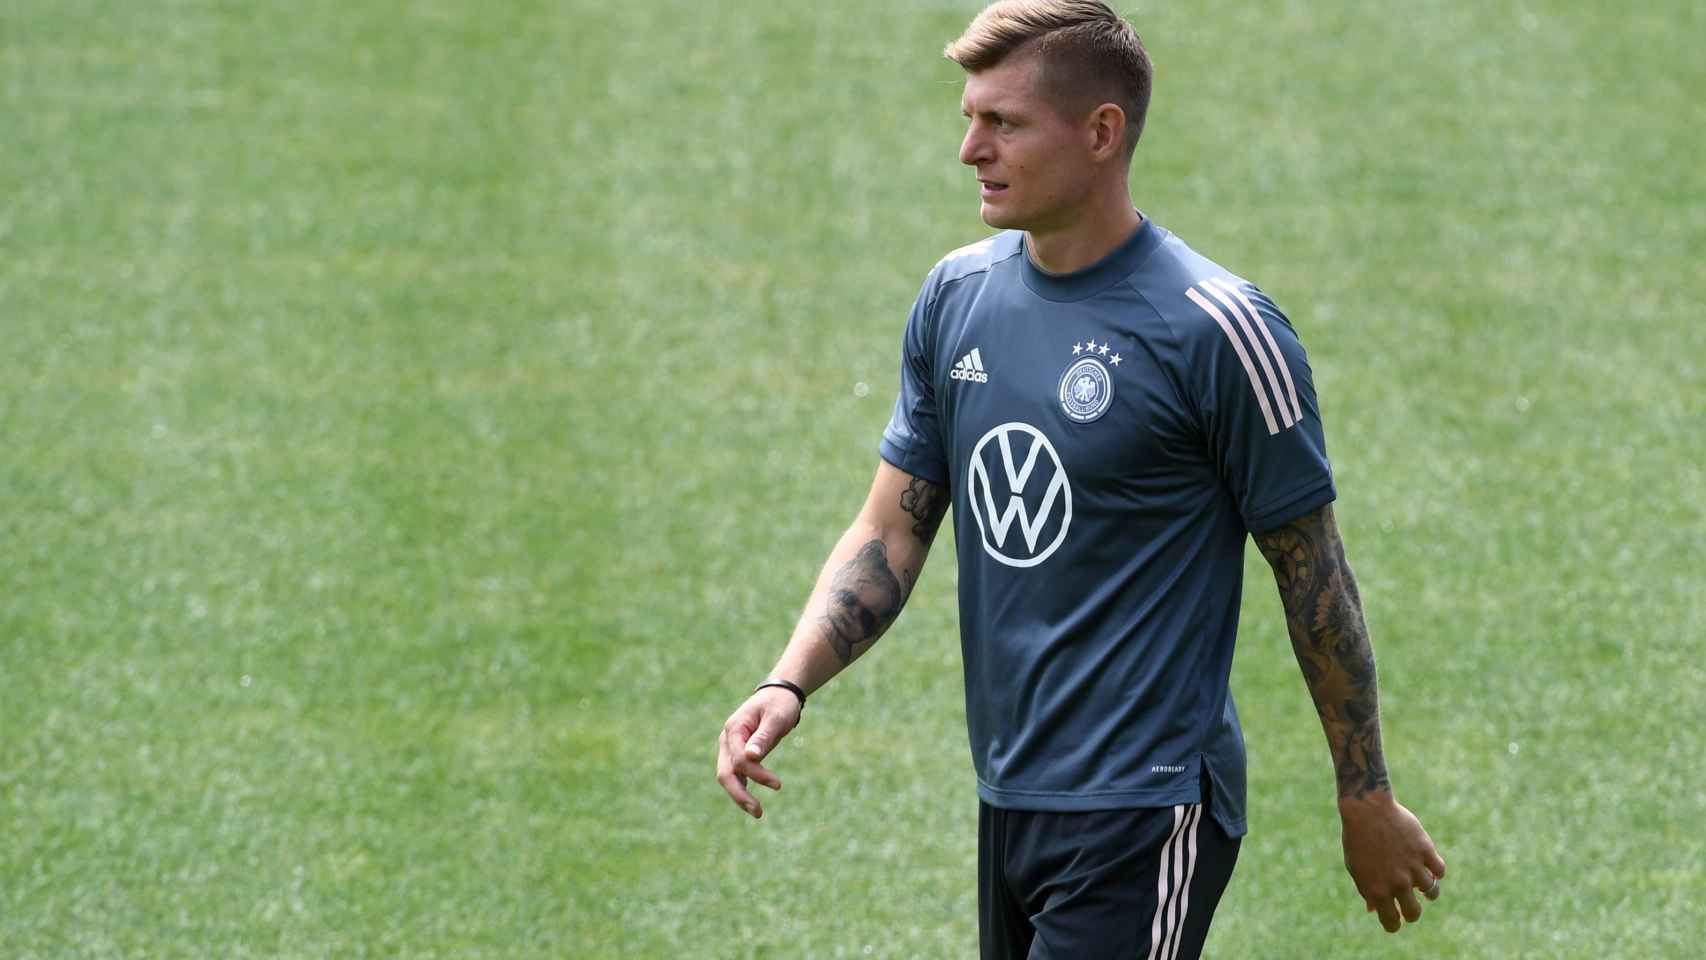 Toni Kroos, en un entrenamiento con la selección de Alemania